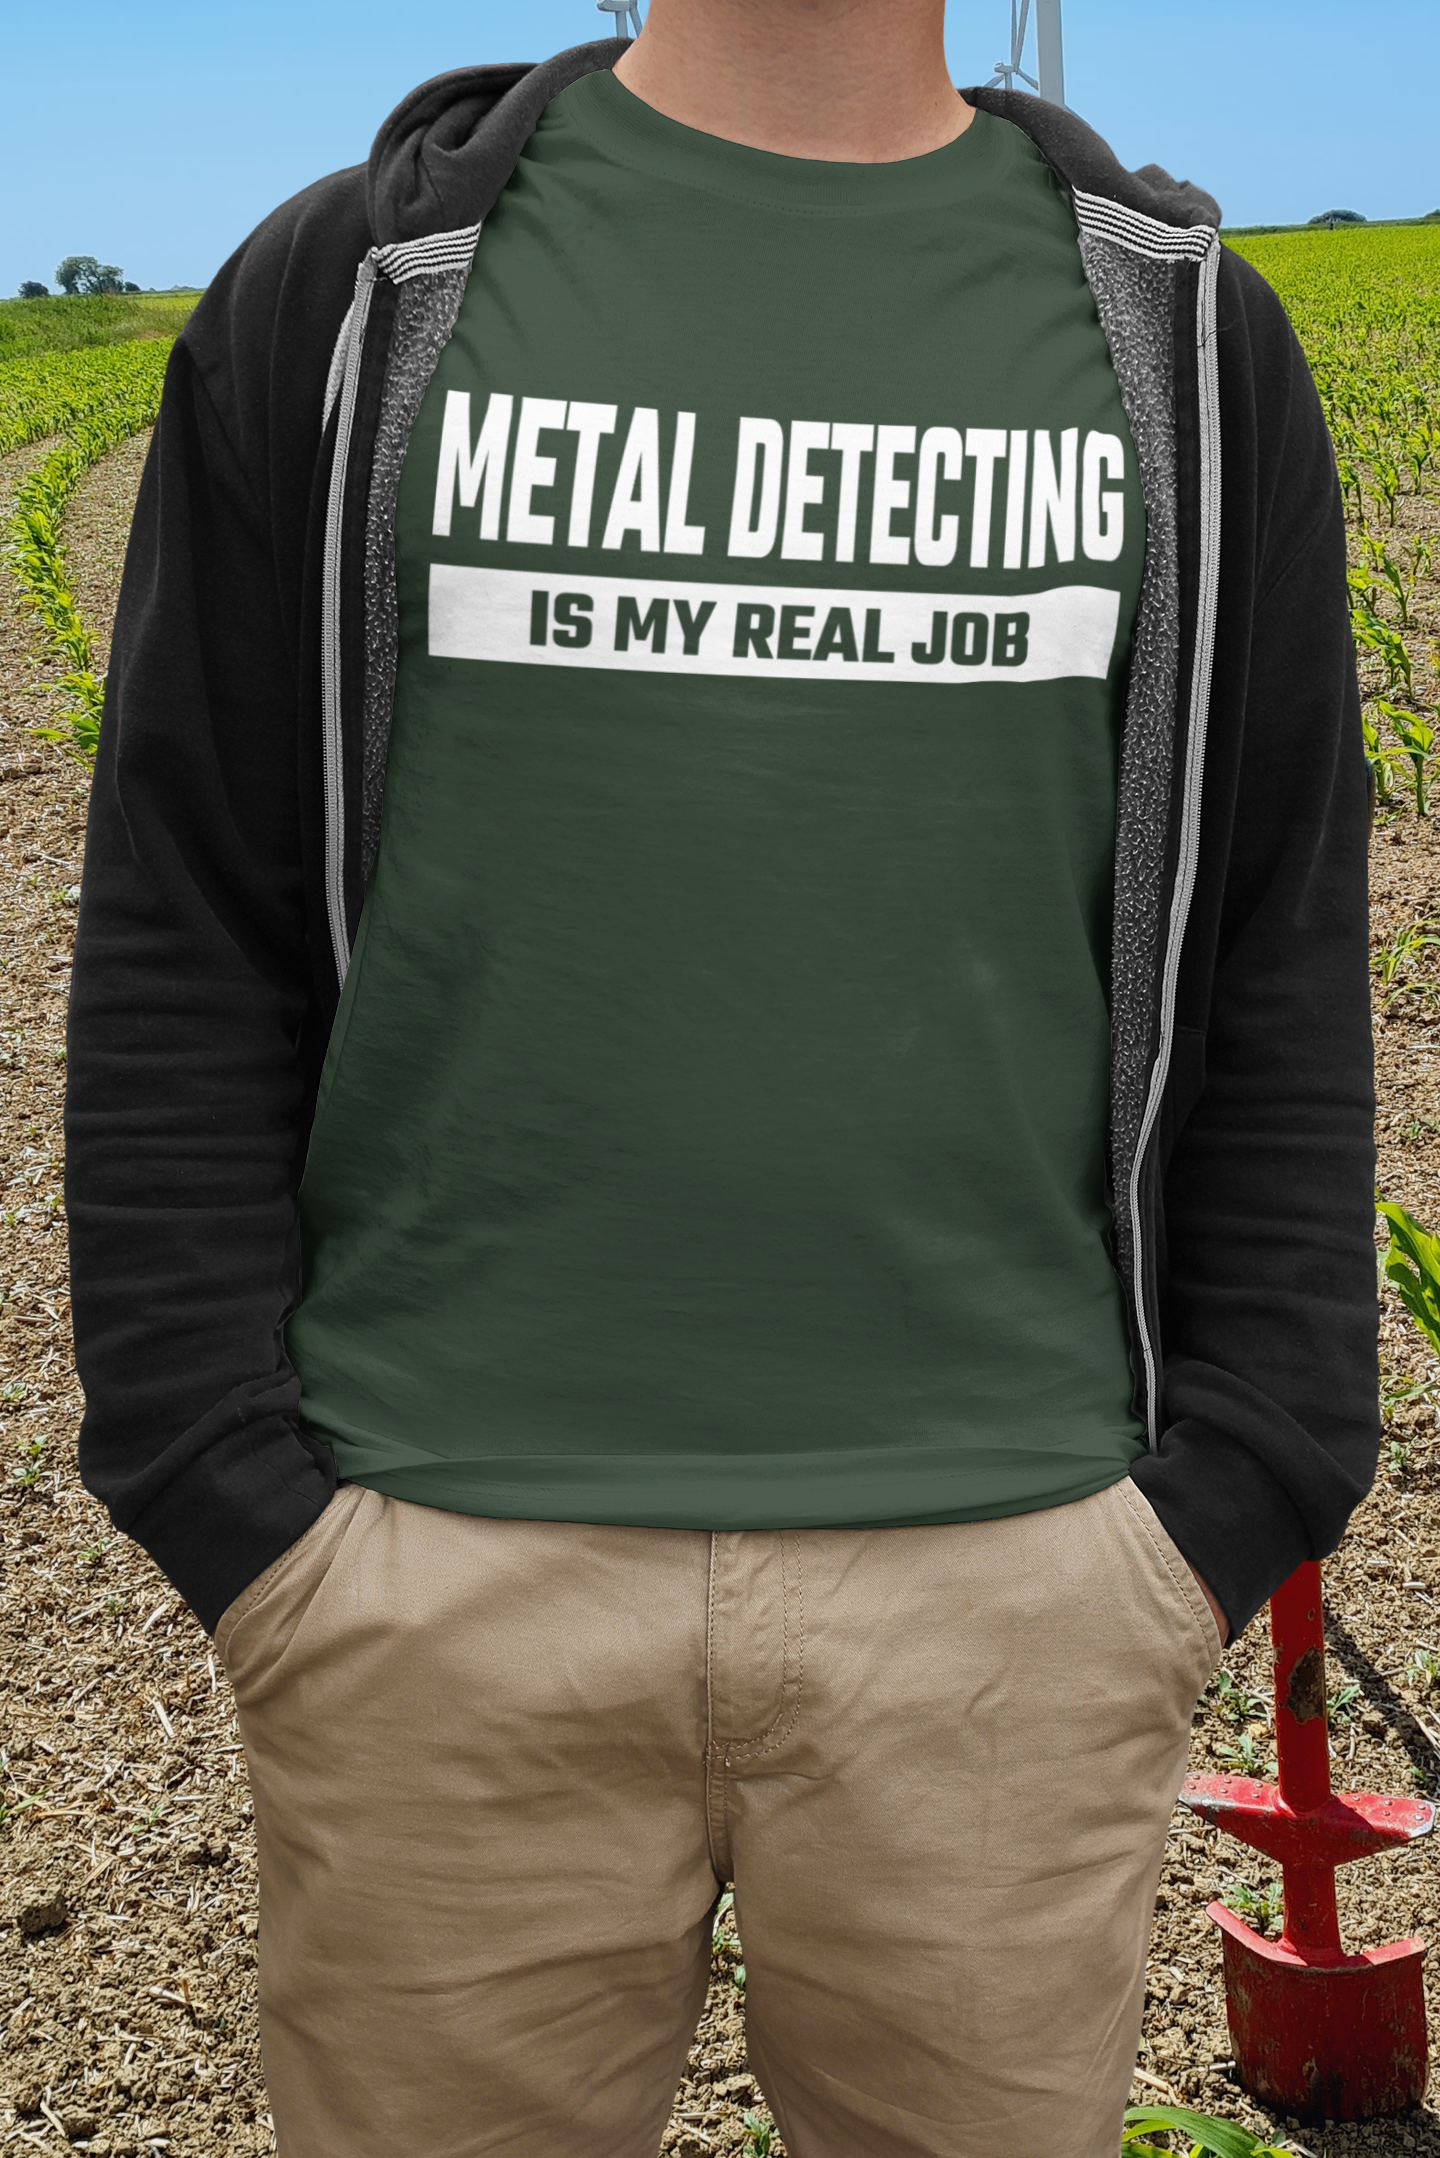 Metal detecting is my real job